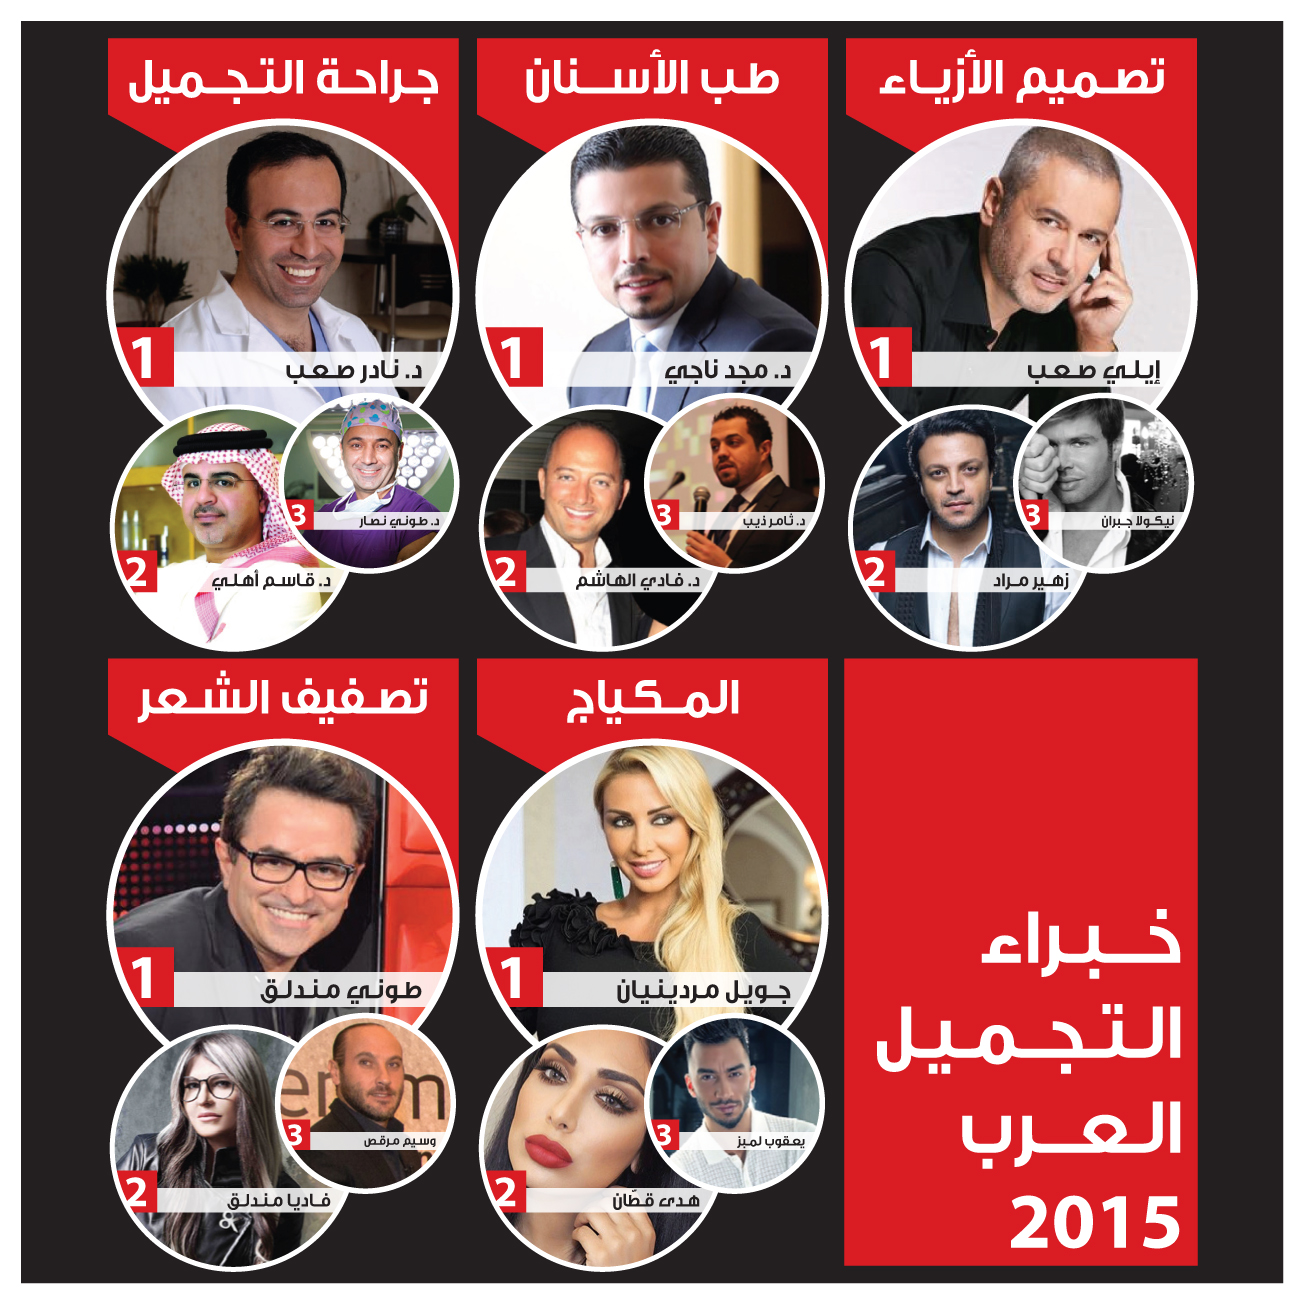 نشر قائمة خبراء الجمال والتجميل والموضة لدى العرب لسنة 2015